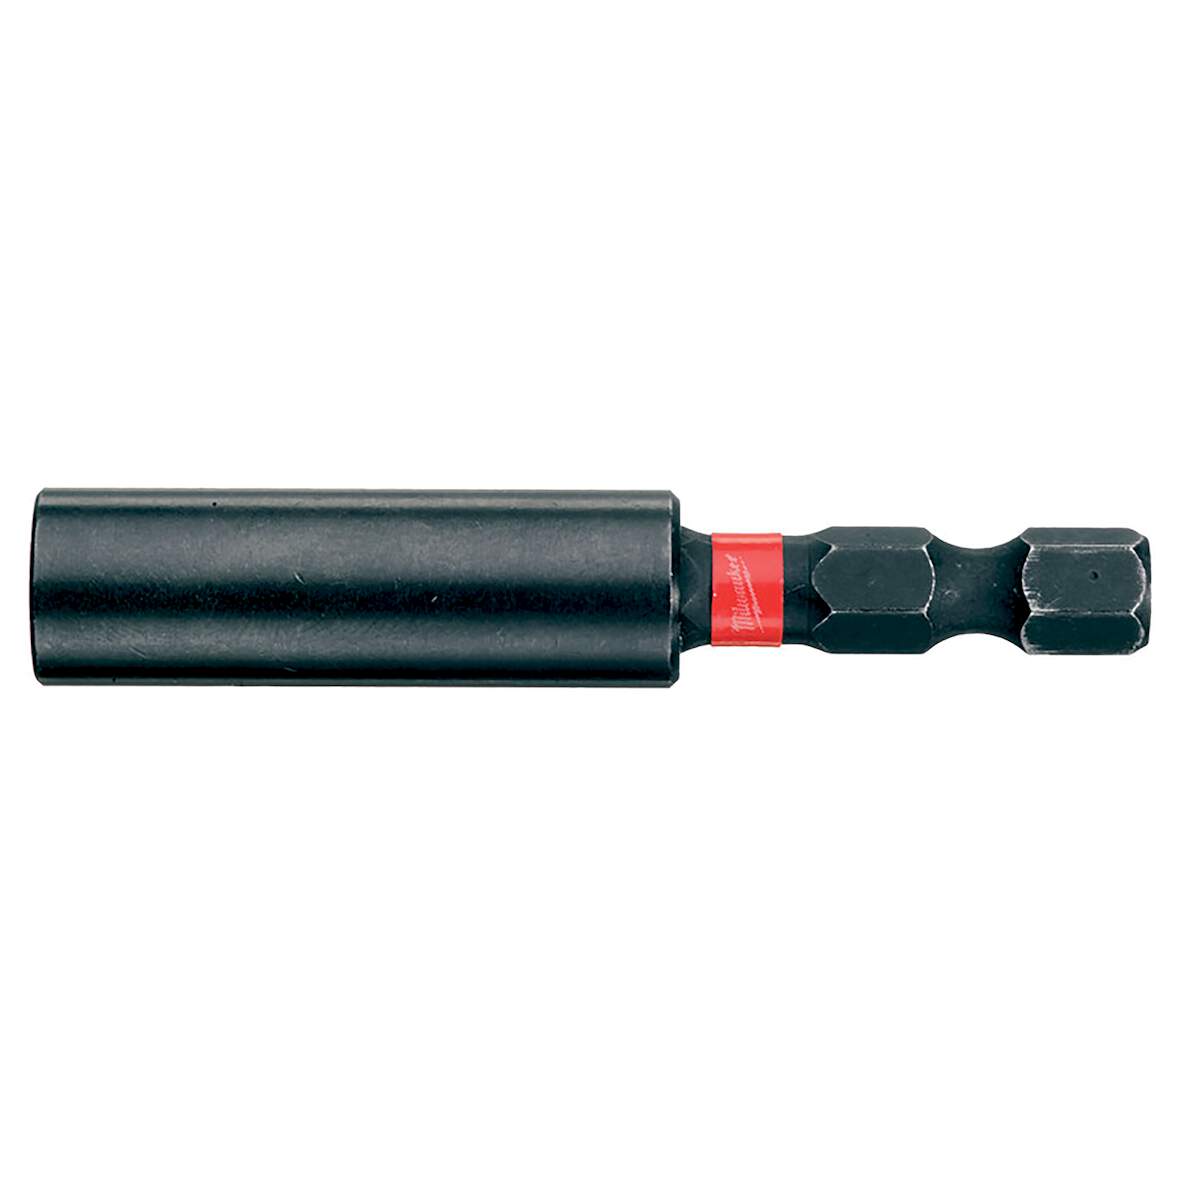 1261905 - SHOCKWAVE Magnetbithalter 1/4\" Hex, 60 mm